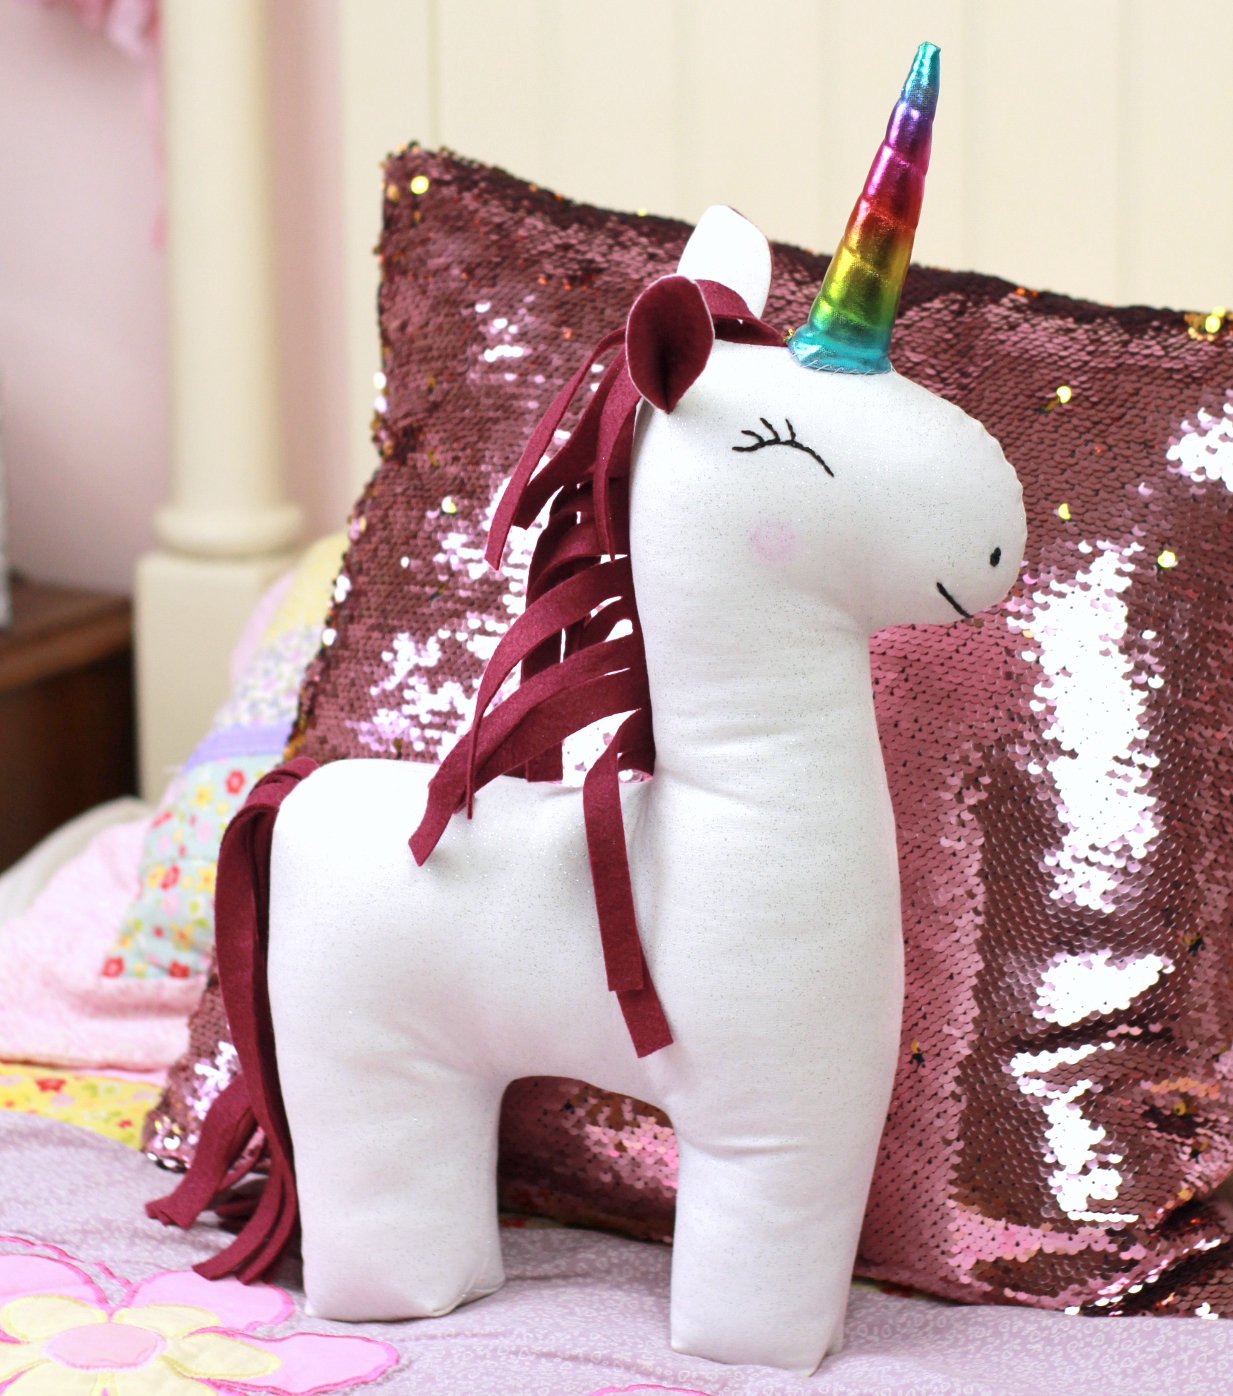 unicorn sewing pattern pdf